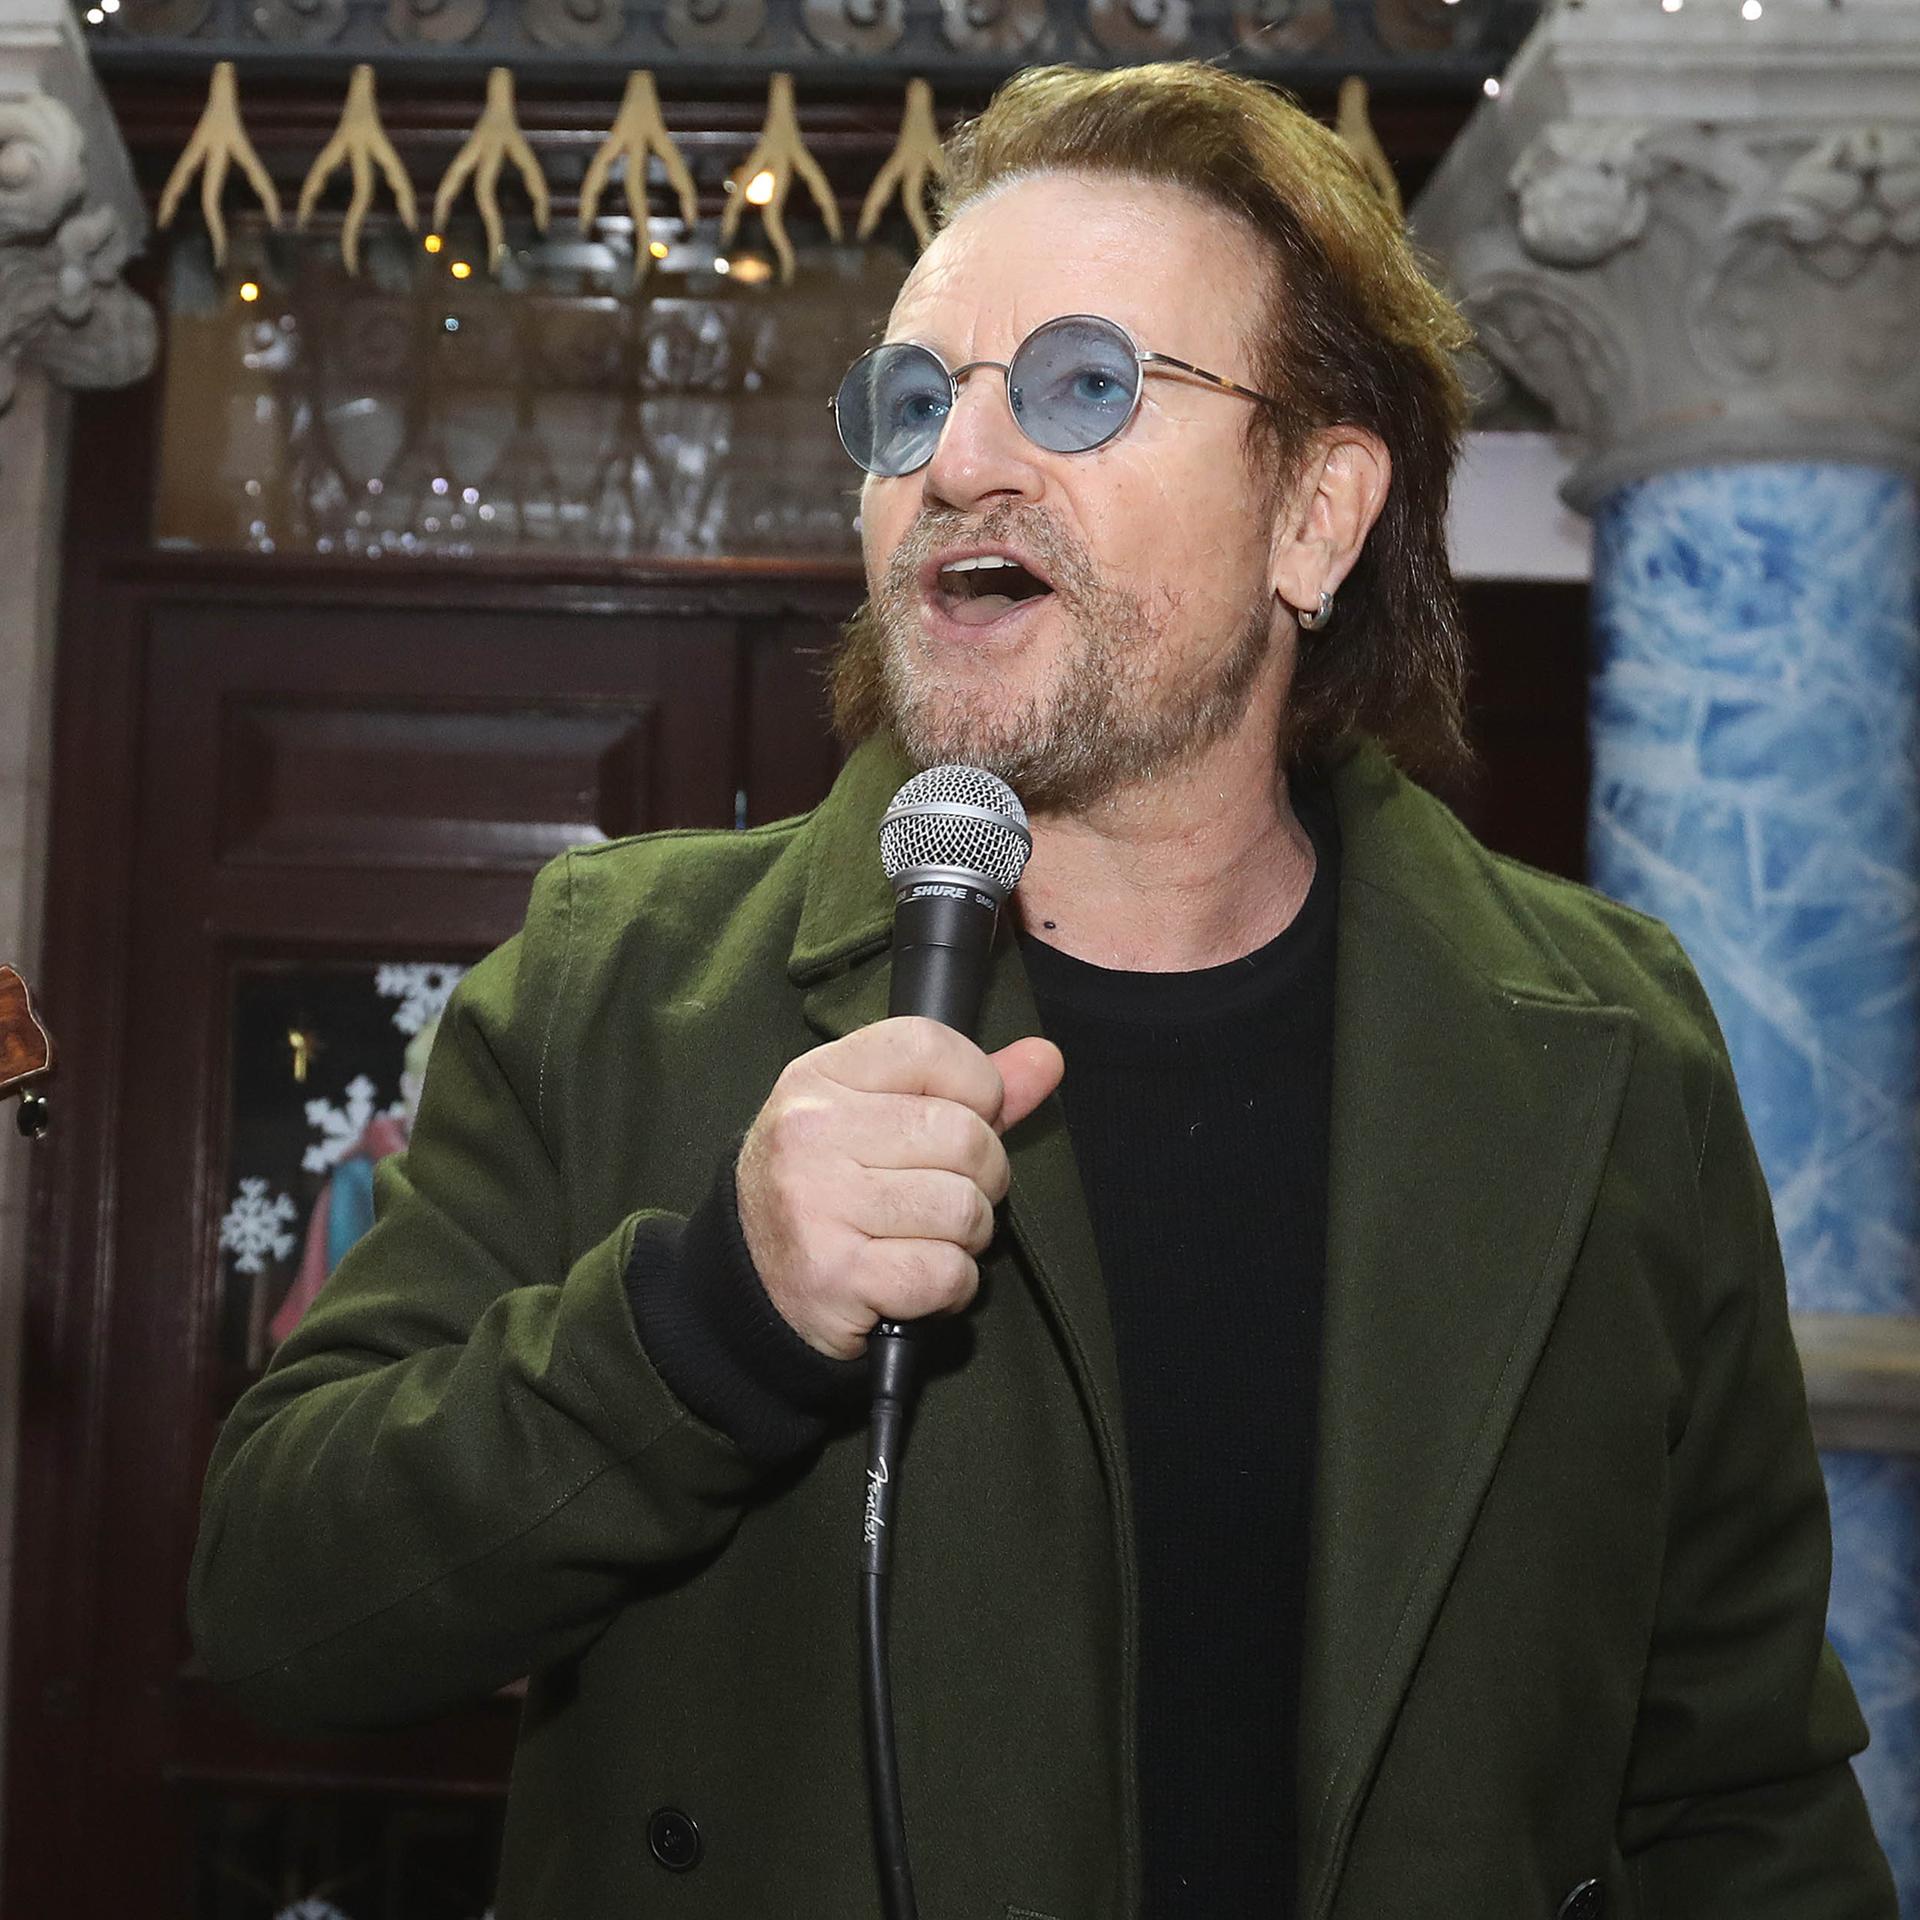 Bonos Autobiografie – Szenen einer Erfolgsgeschichte